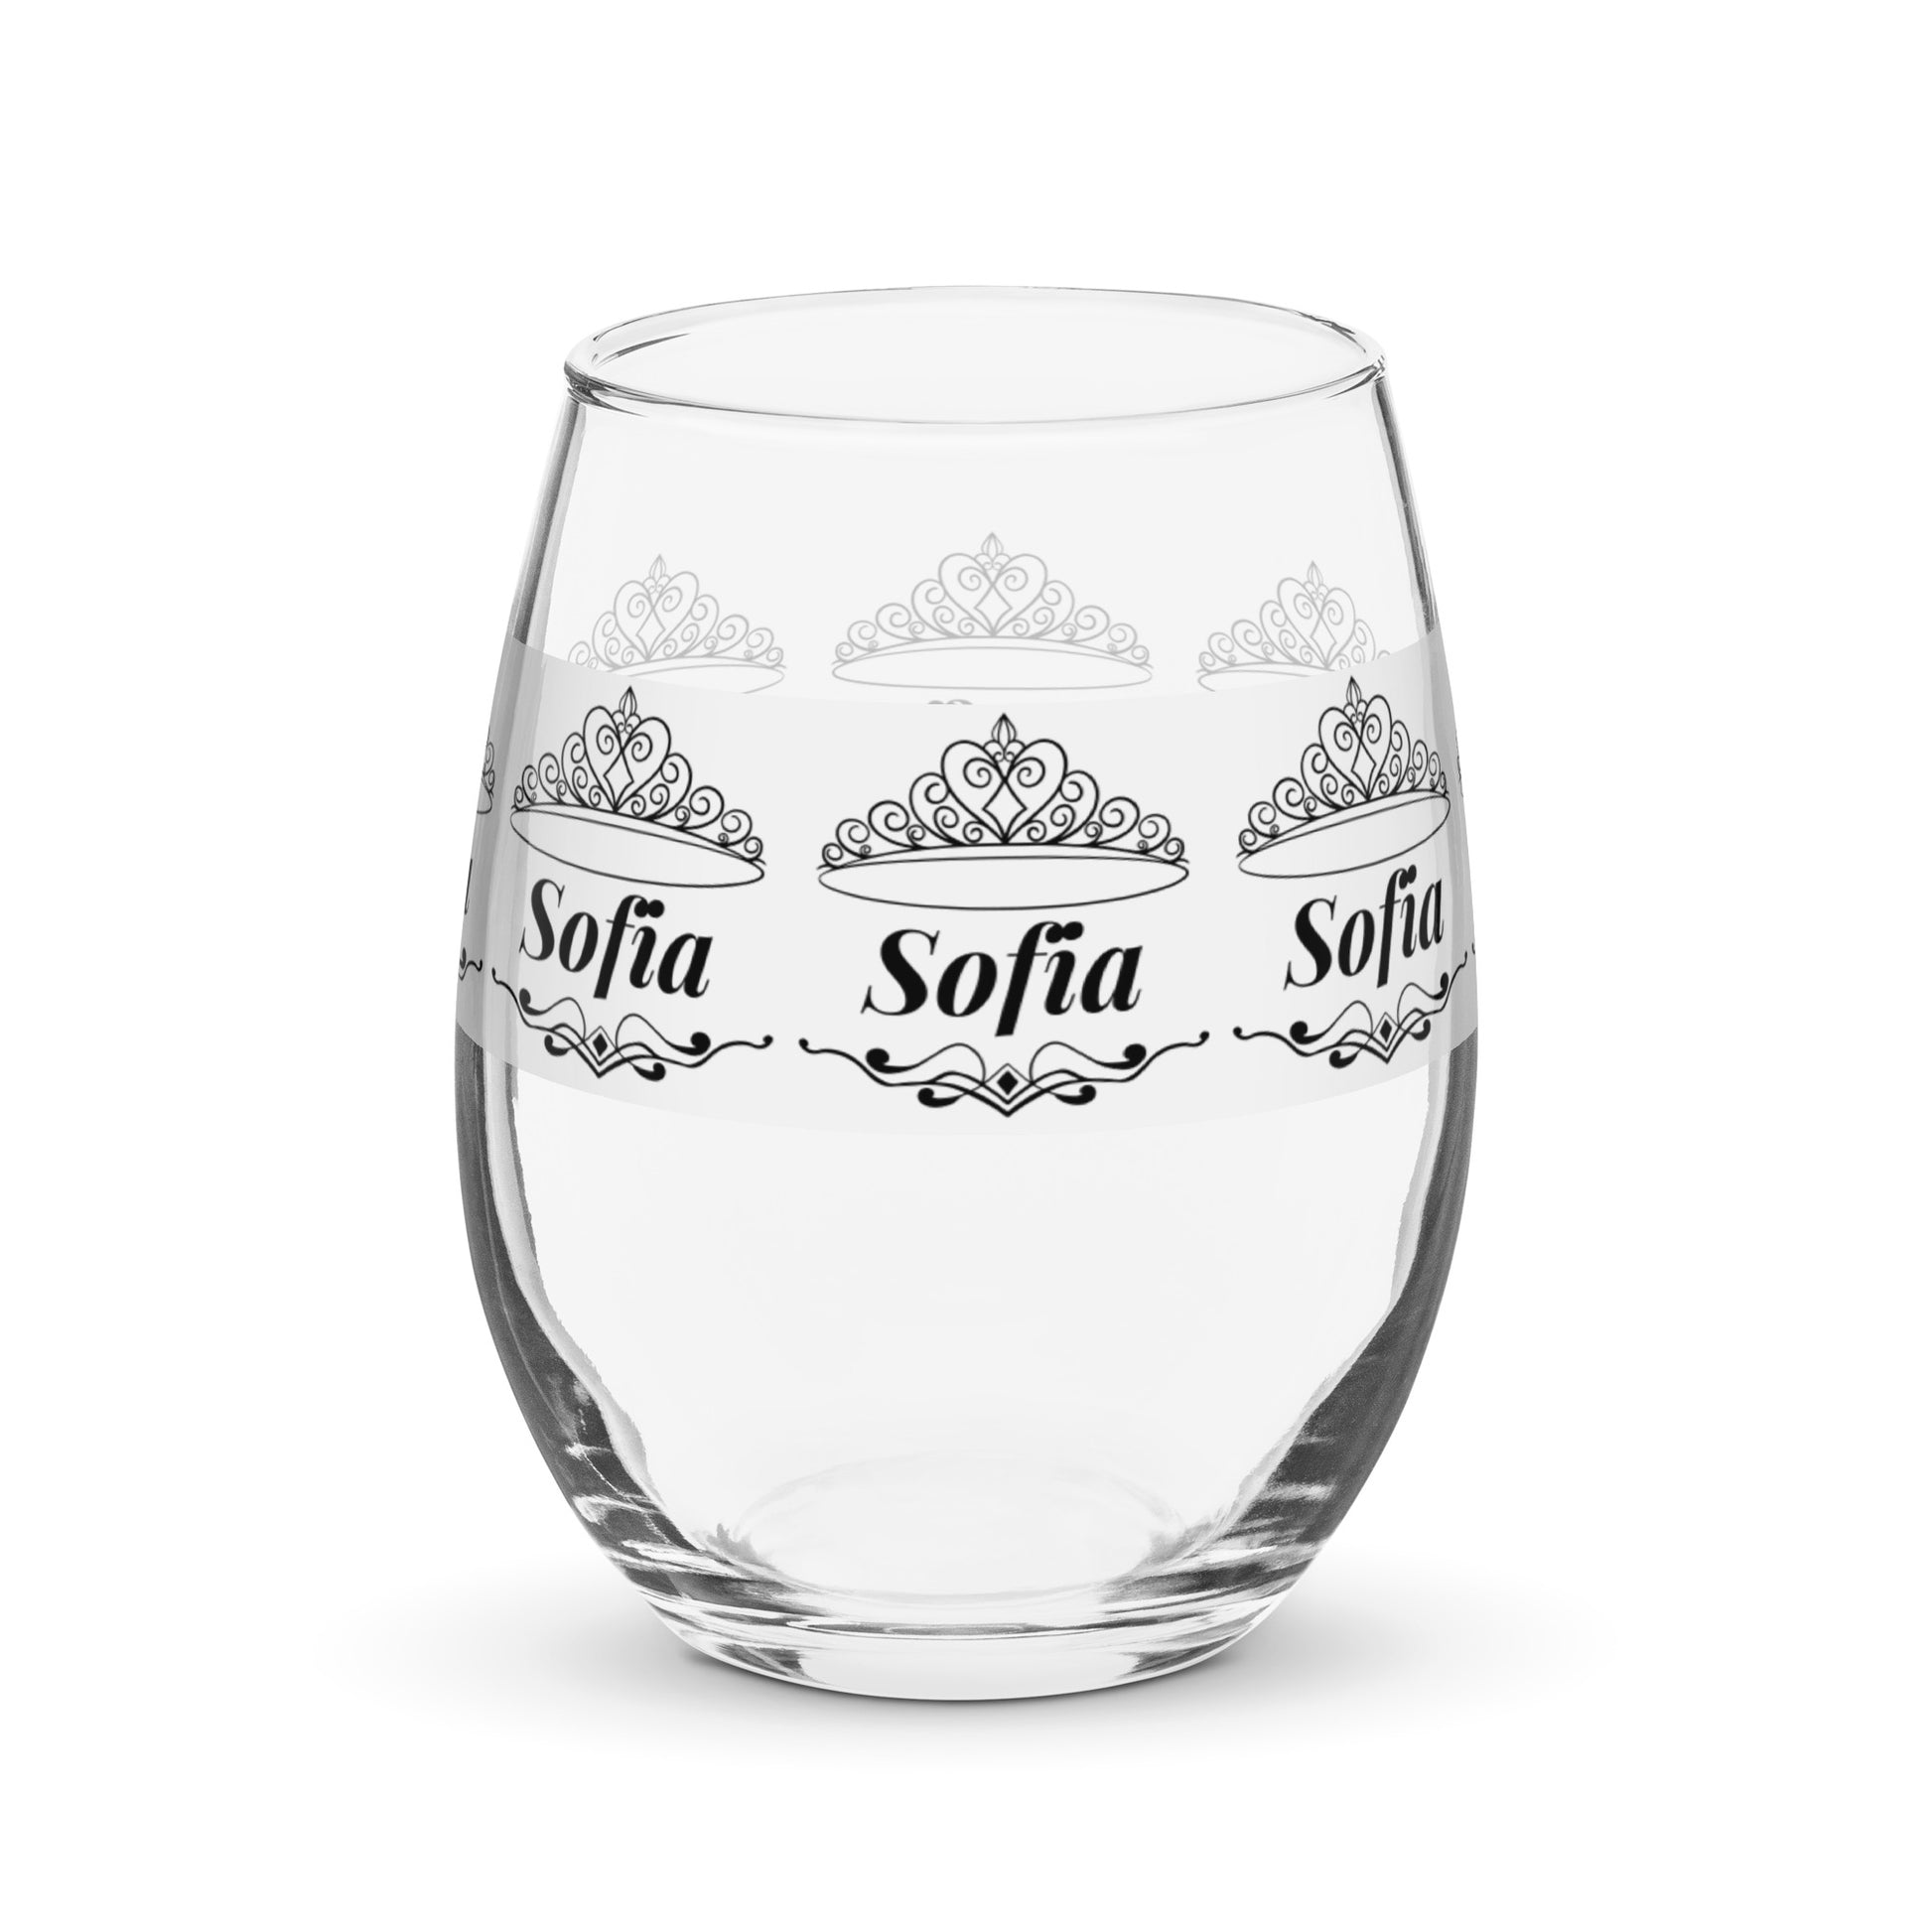 name wine glass personalized wine glass Sofia wine glass